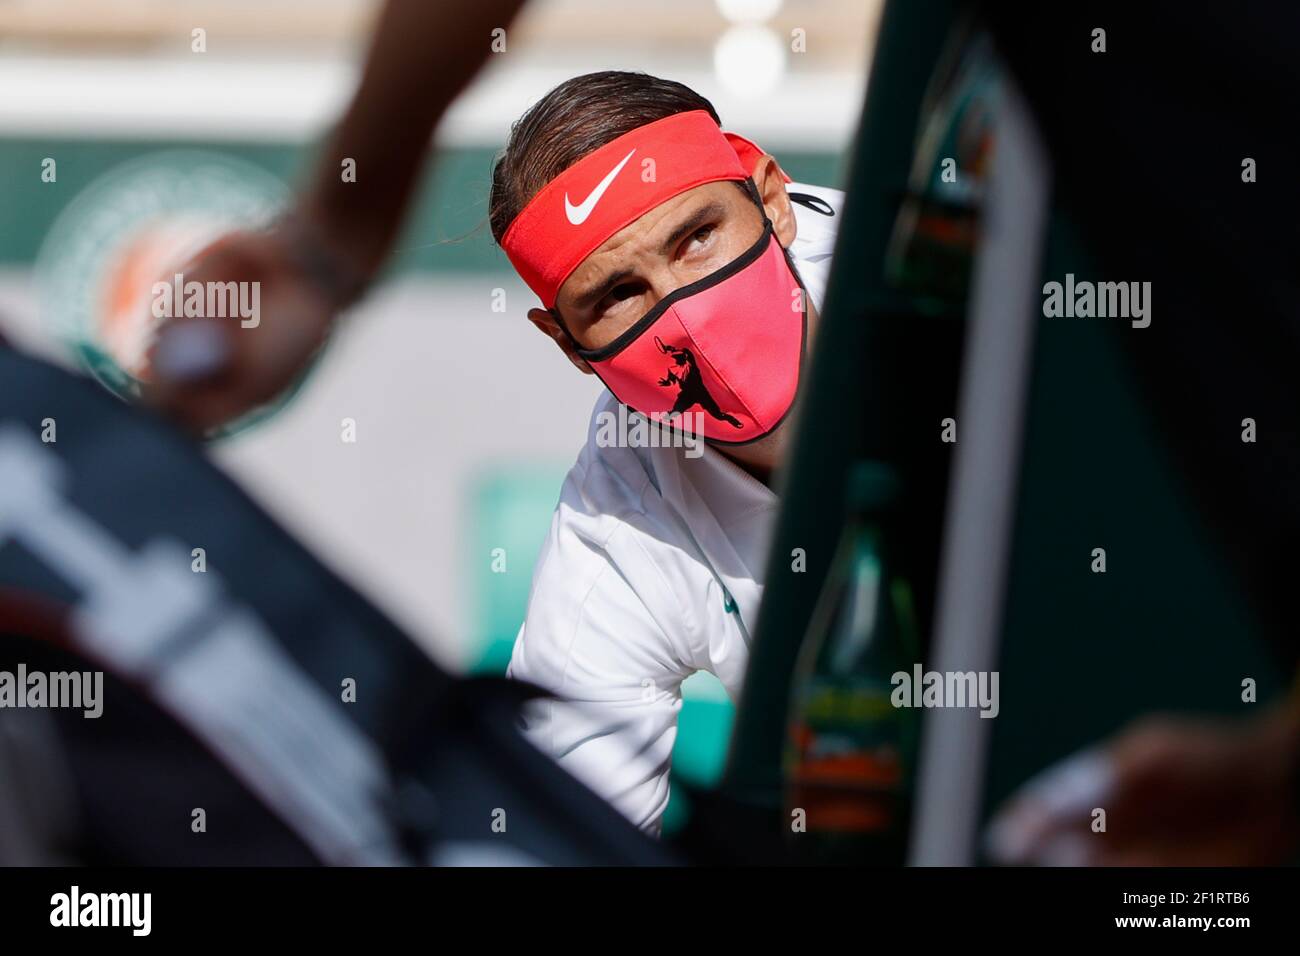 Rafael NADAL (ESP) lors du tournoi de tennis Roland Garros 2020, Grand Chelem, le 9 octobre 2020 au stade Roland Garros à Paris, France - photo Stephane Allaman / DPPI Banque D'Images